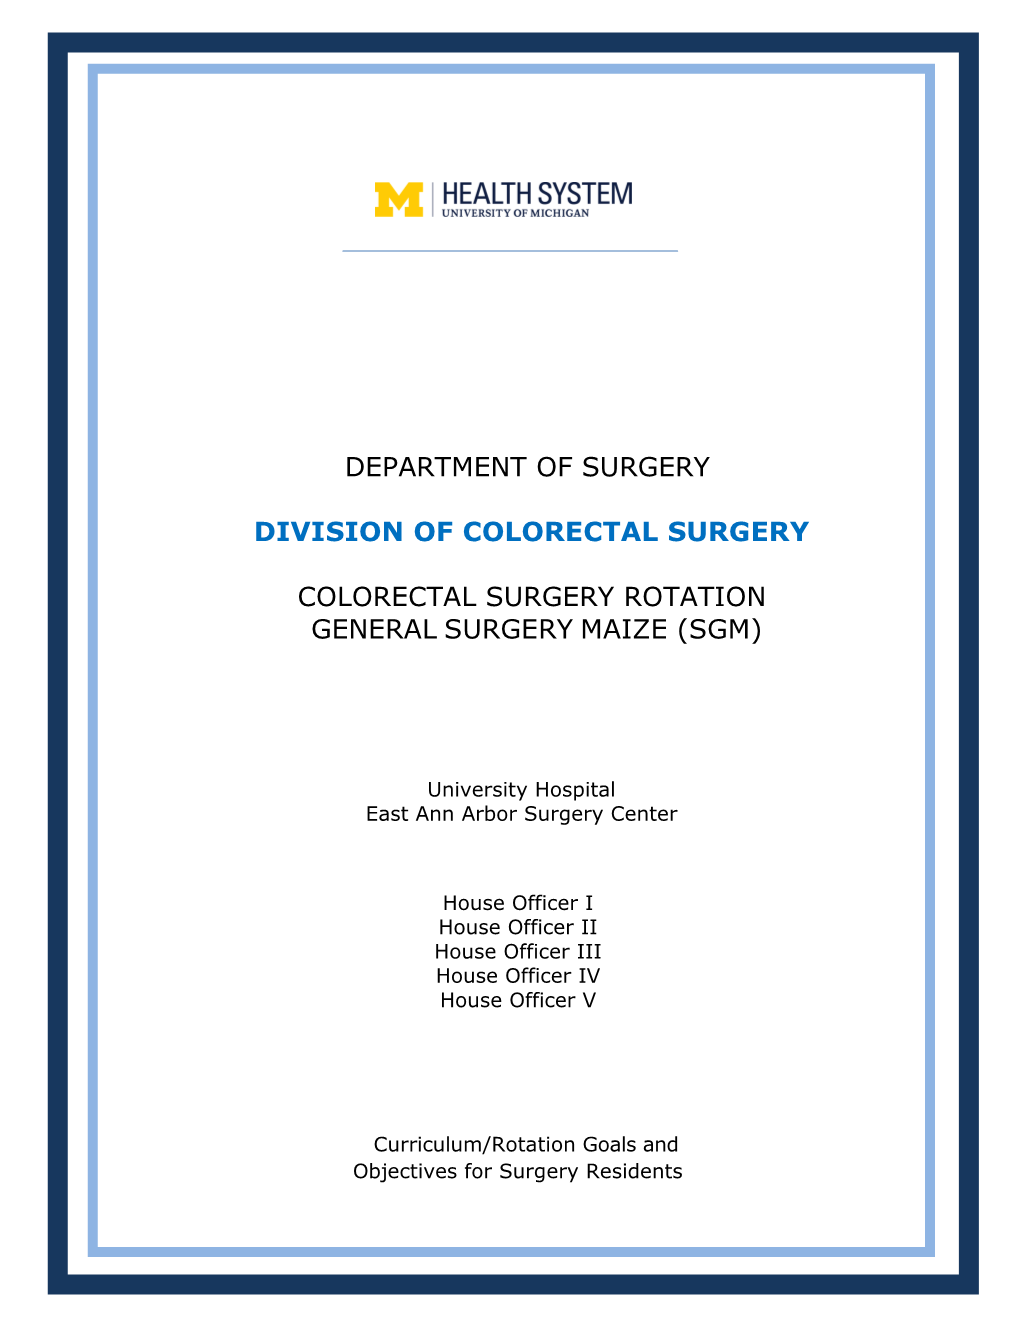 Colorectal Surgery Rotation General Surgery Maize (Sgm)